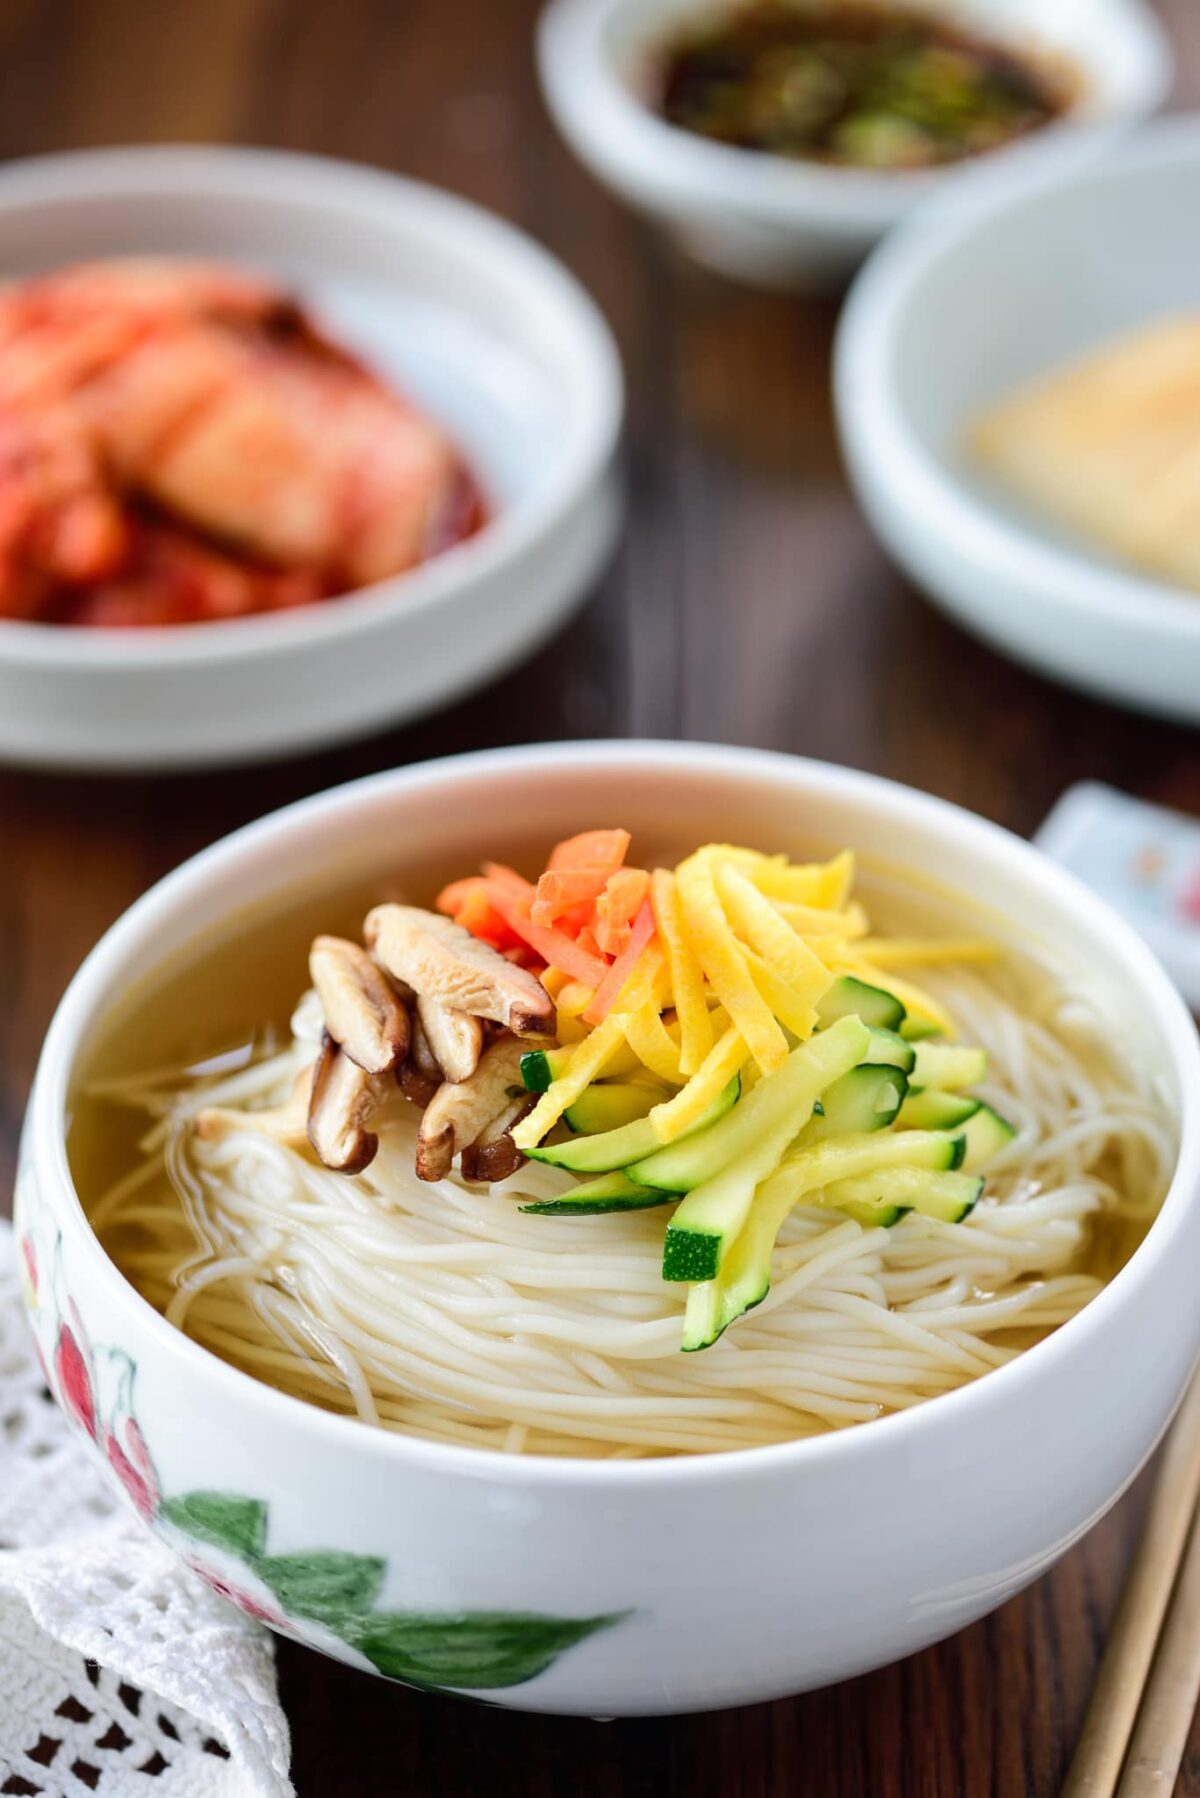 DSC9363 3 e1645133114112 - Janchi Guksu (Warm Noodle Soup)